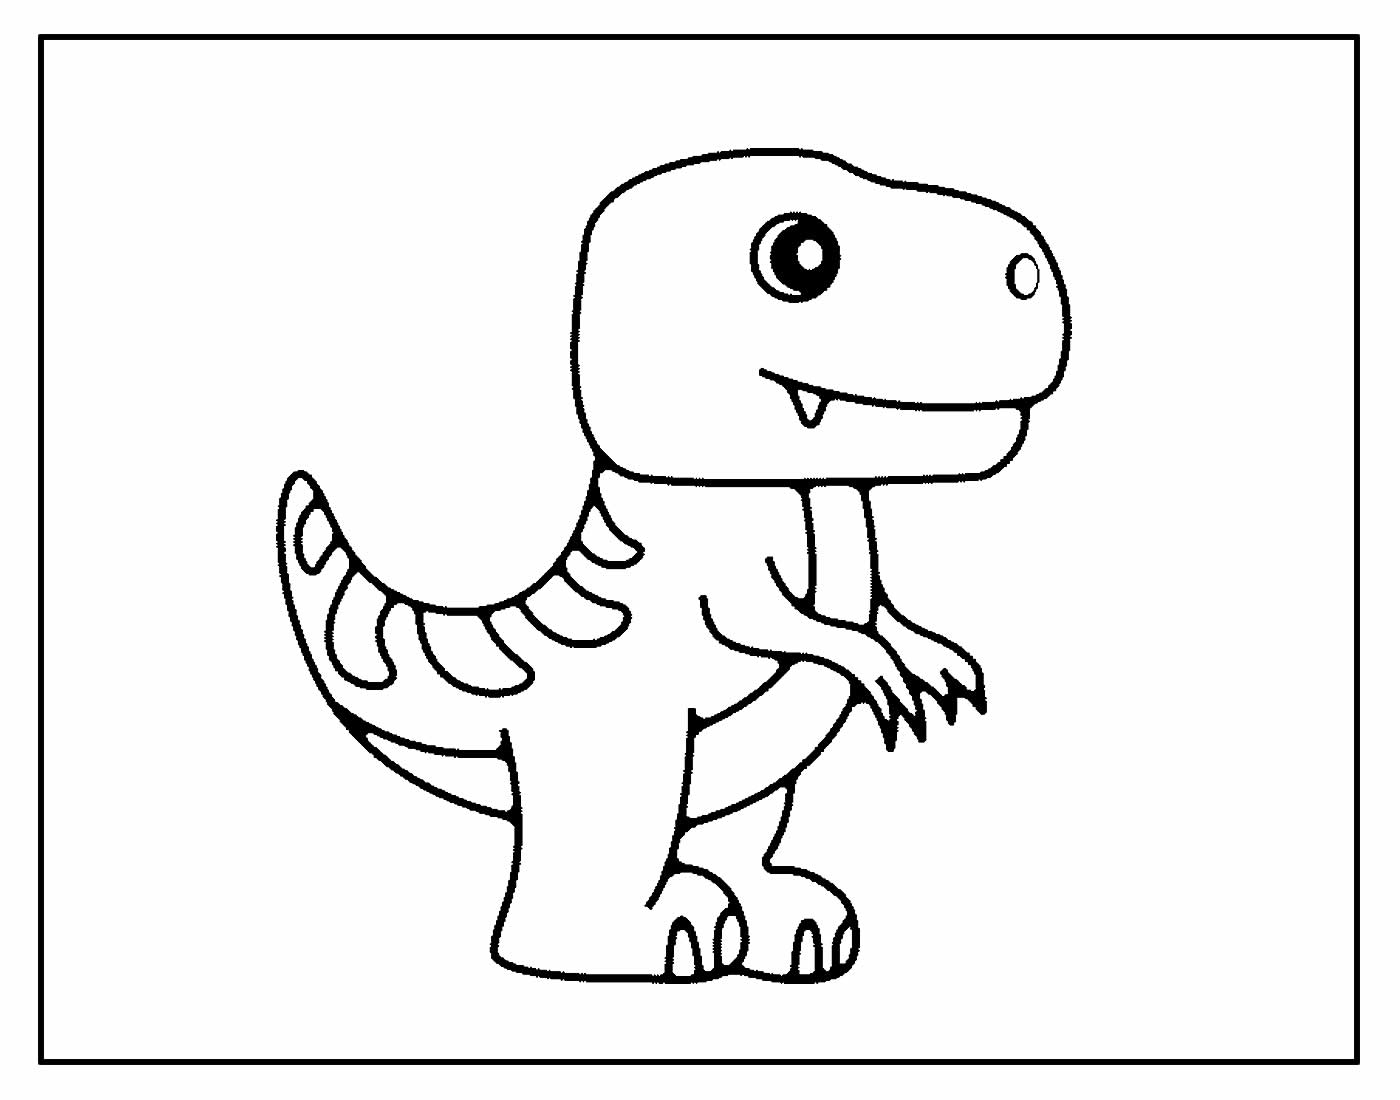 desenho de dinossauro para colorir 17673987 Vetor no Vecteezy